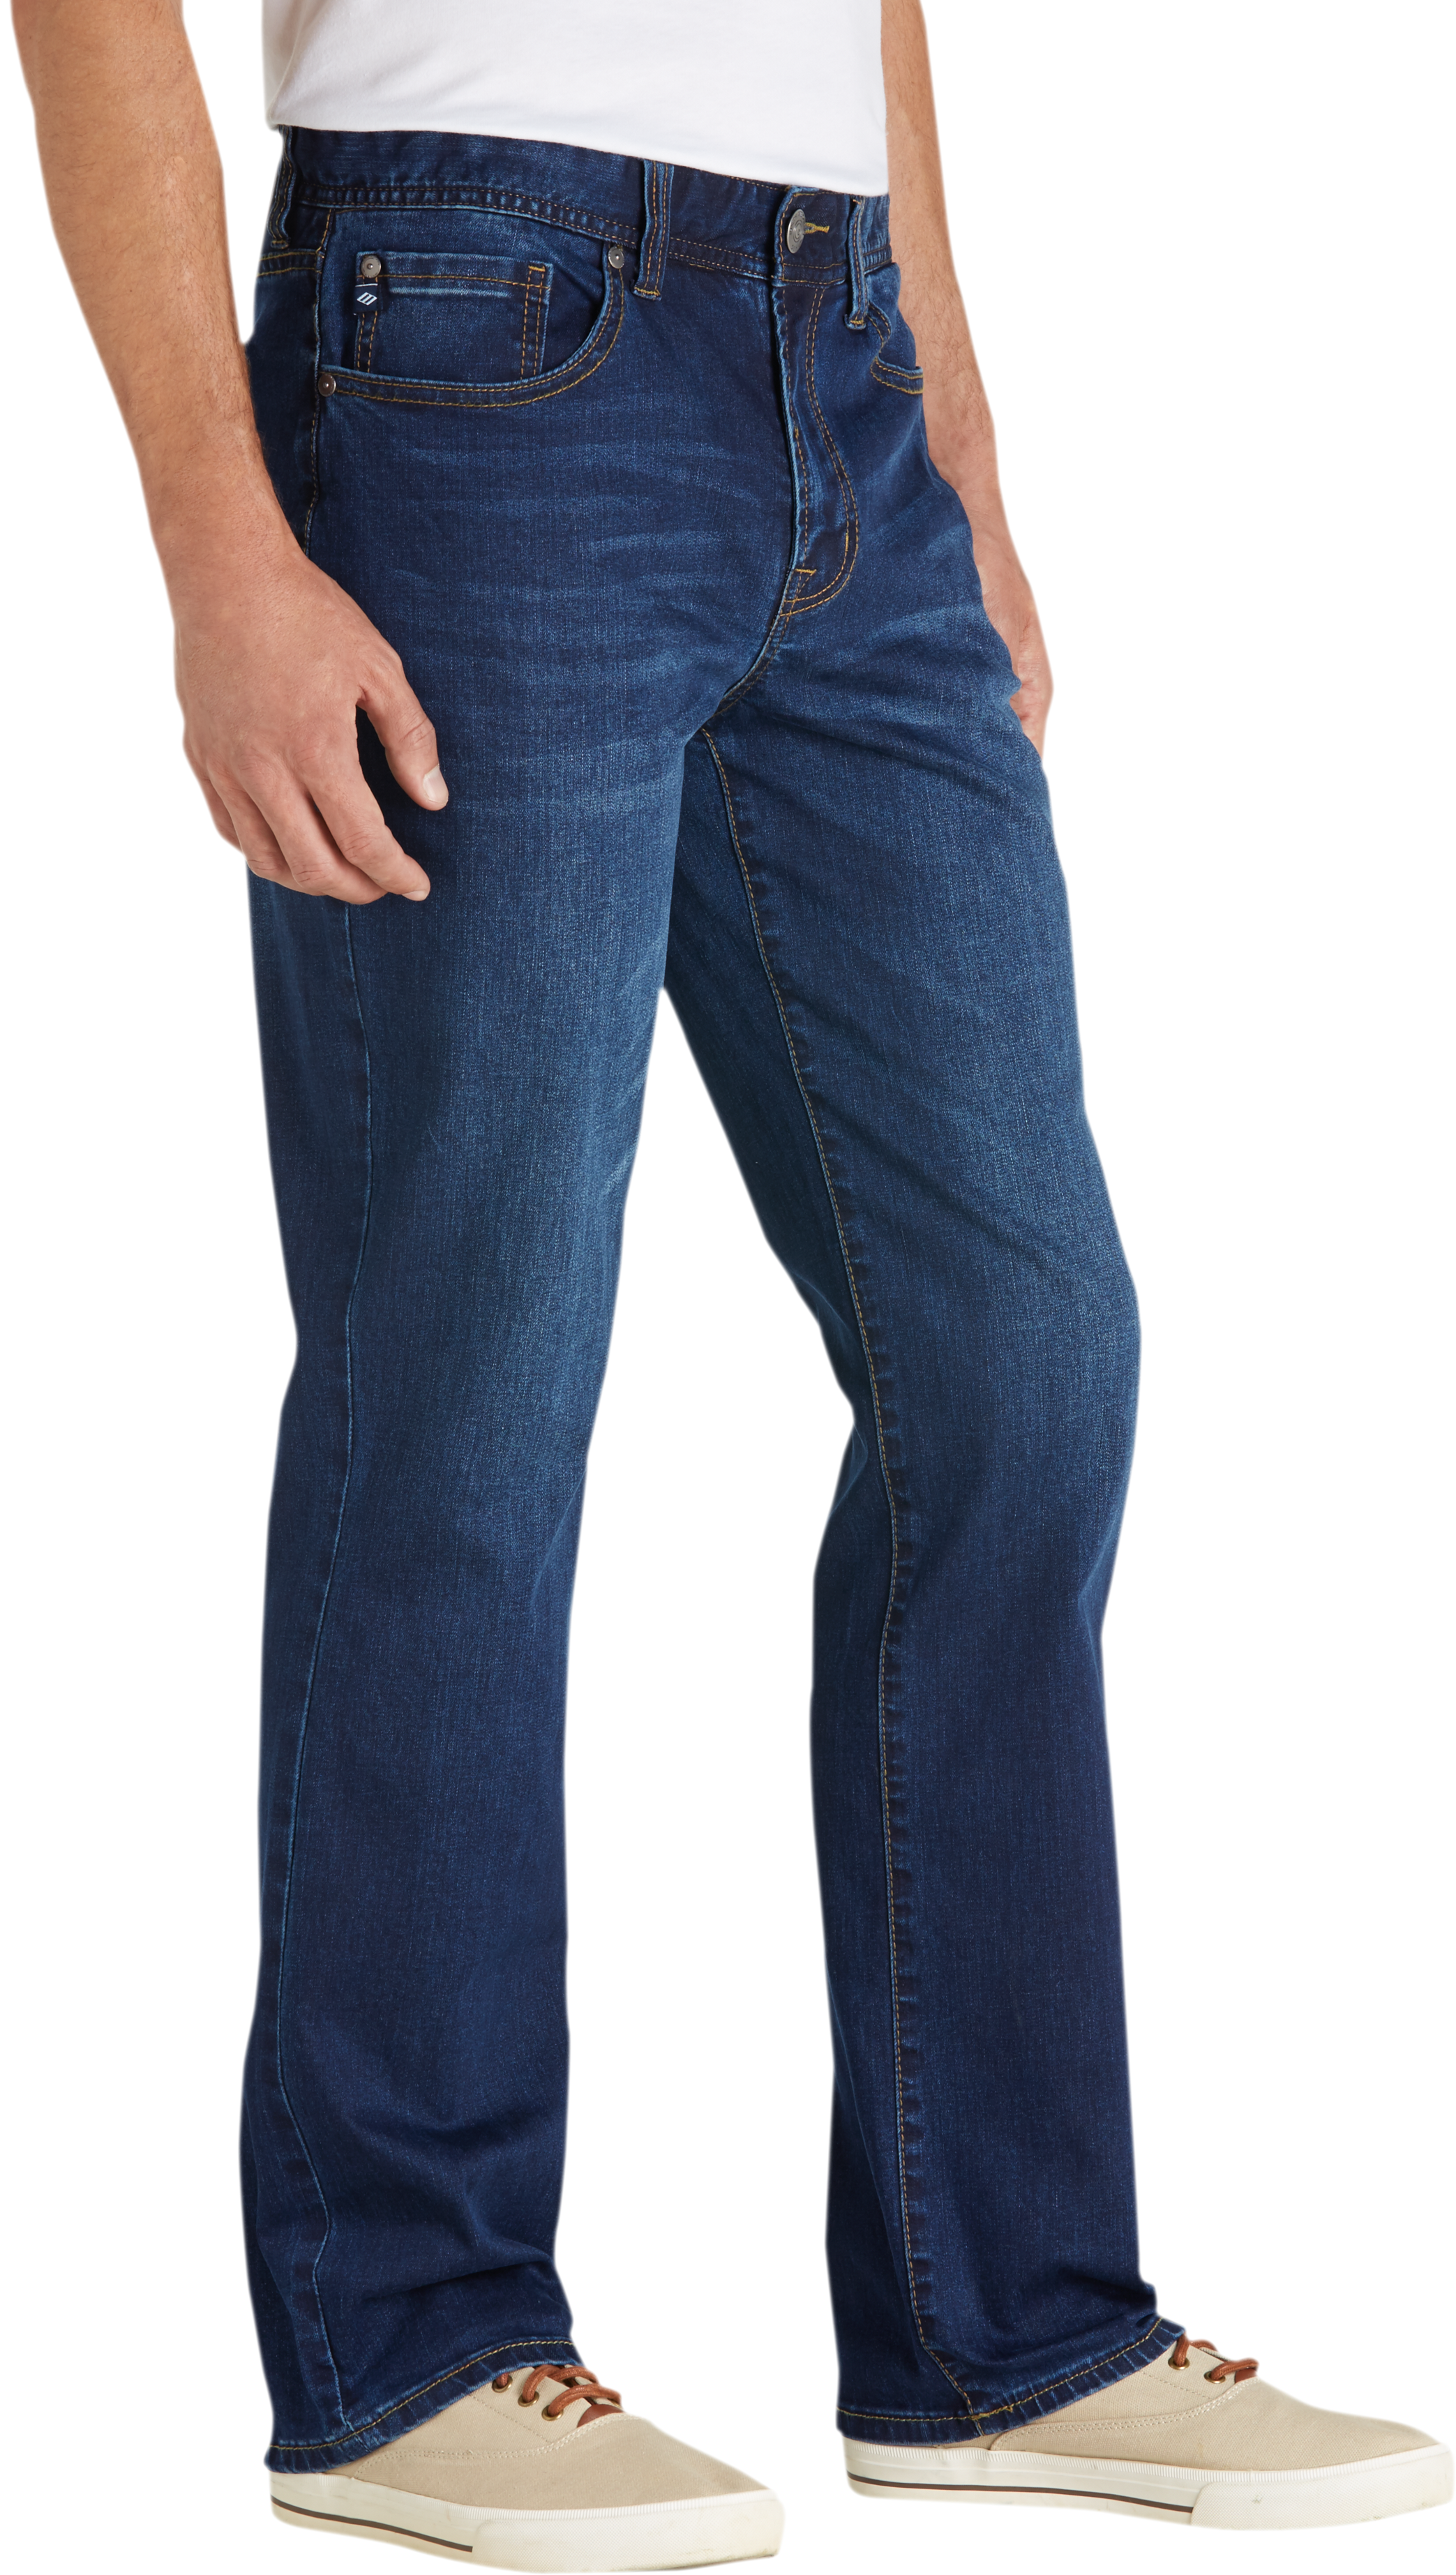 Joseph Abboud Blue Wash Classic Fit Jeans - Men's Pants | Men's Wearhouse